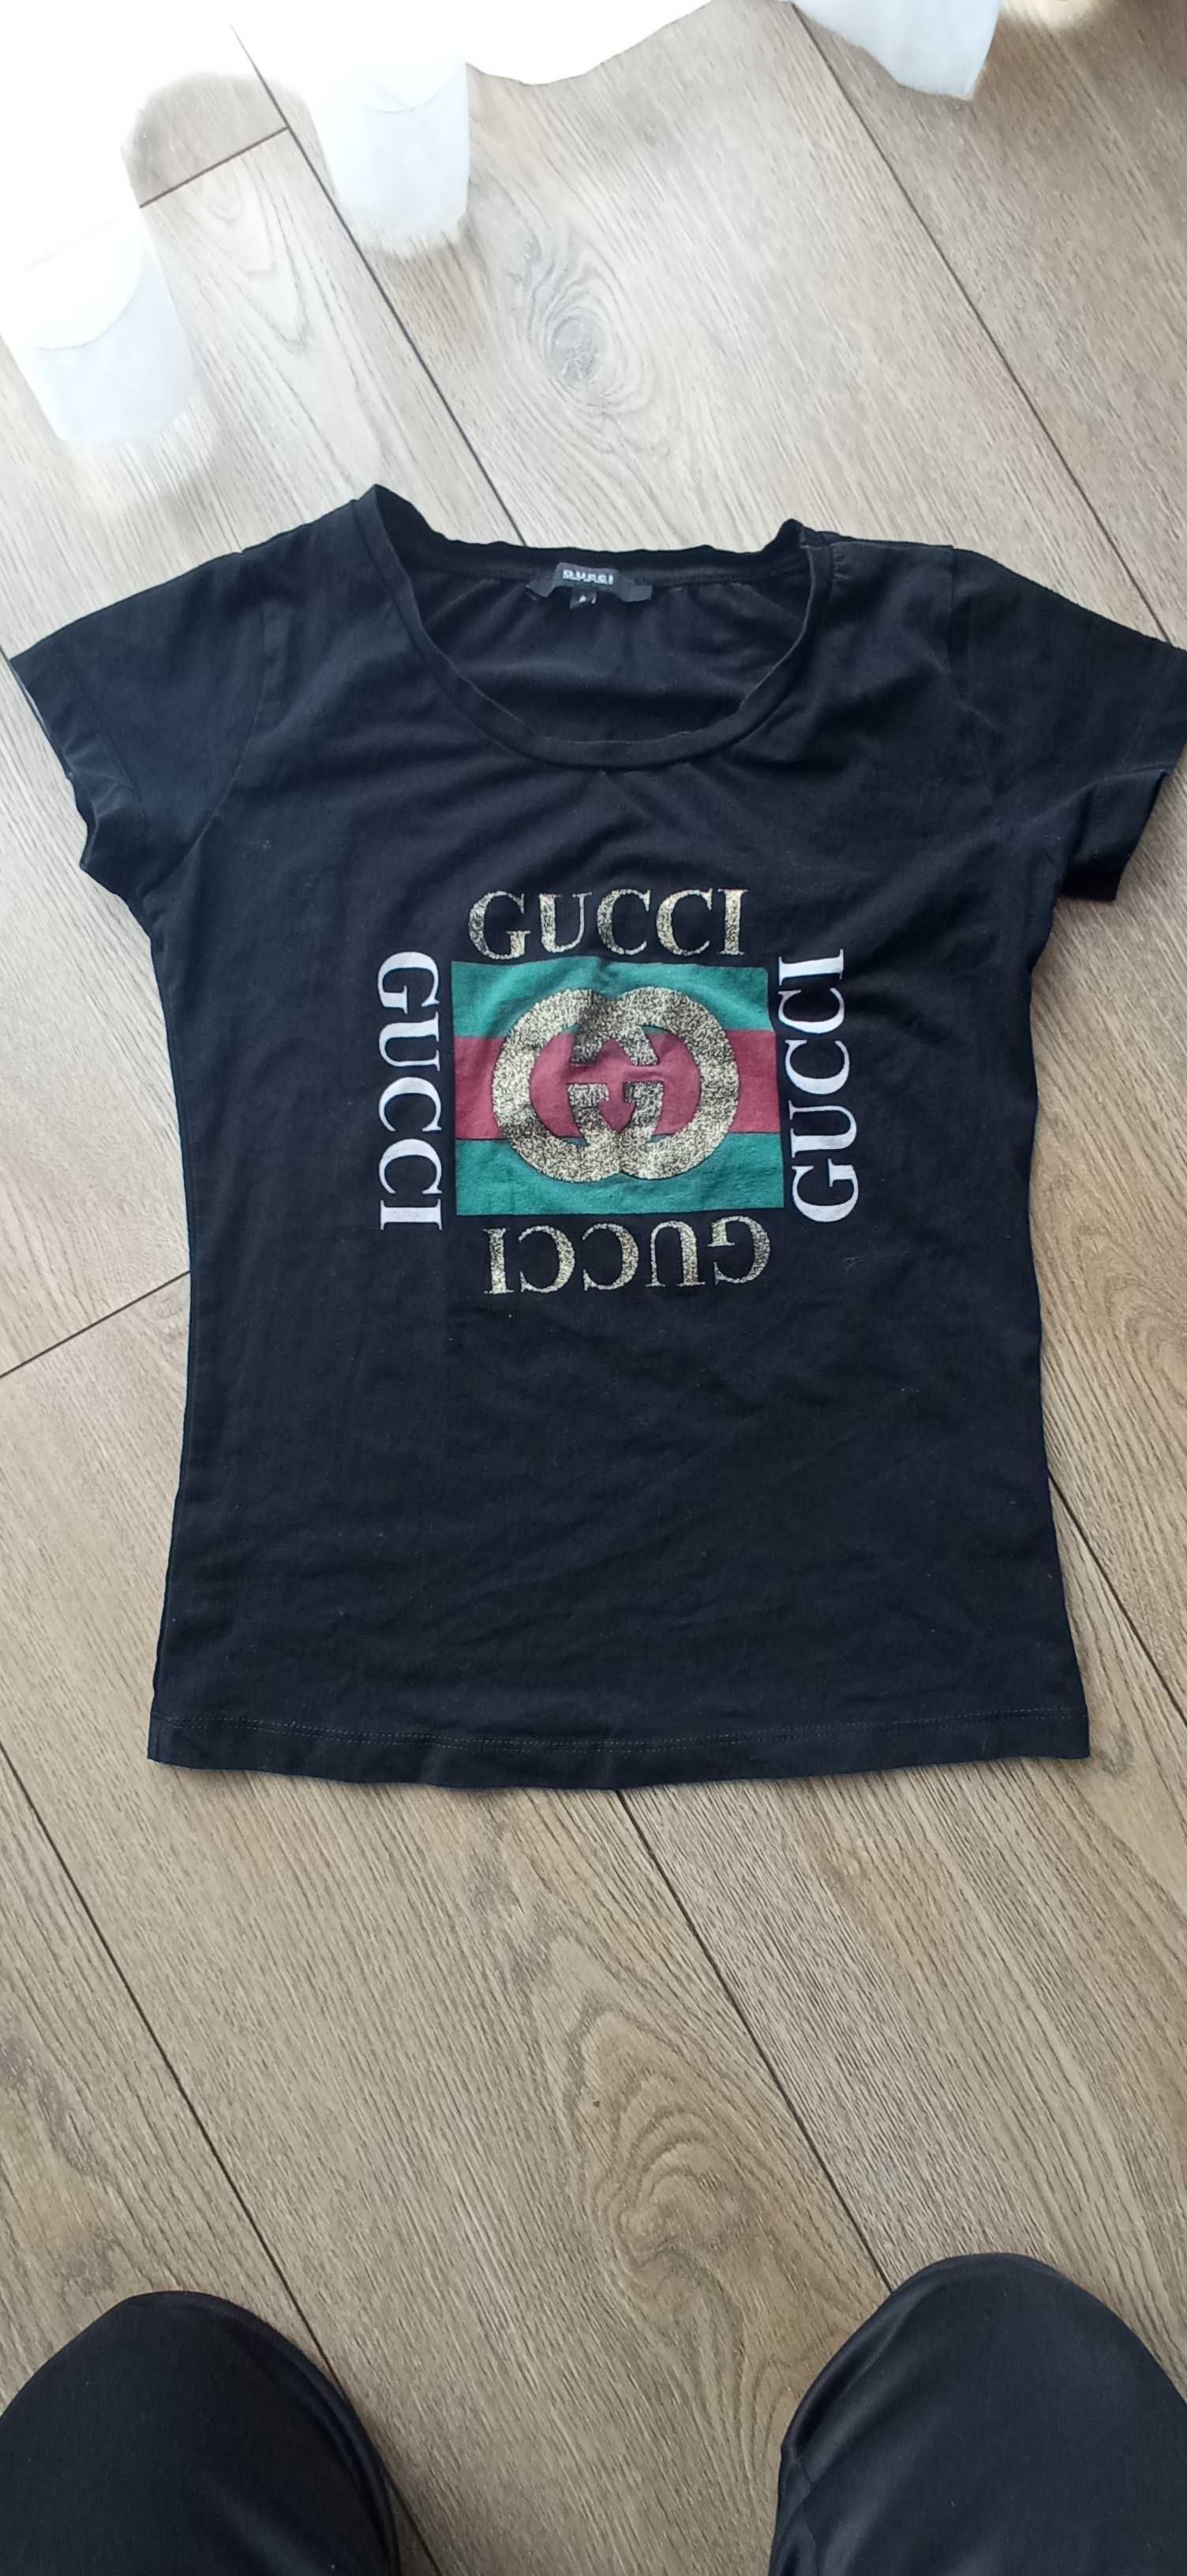 Koszulka z napisem Gucci